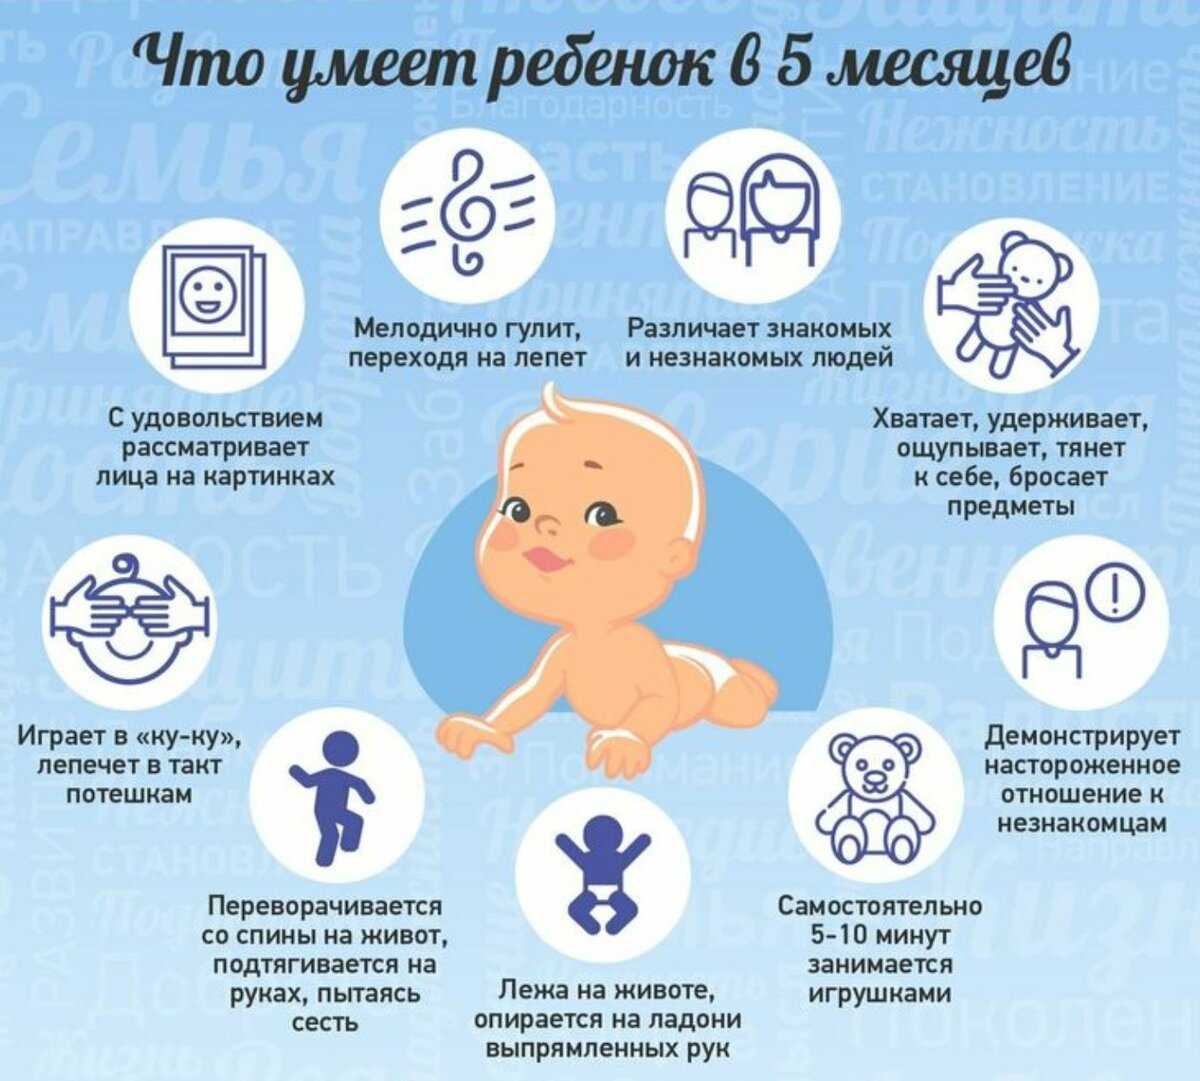 Развитие ребенка в 7 месяцев: что должен уметь делать, как развивать семимесячного мальчика или девочку и другие рекомендации